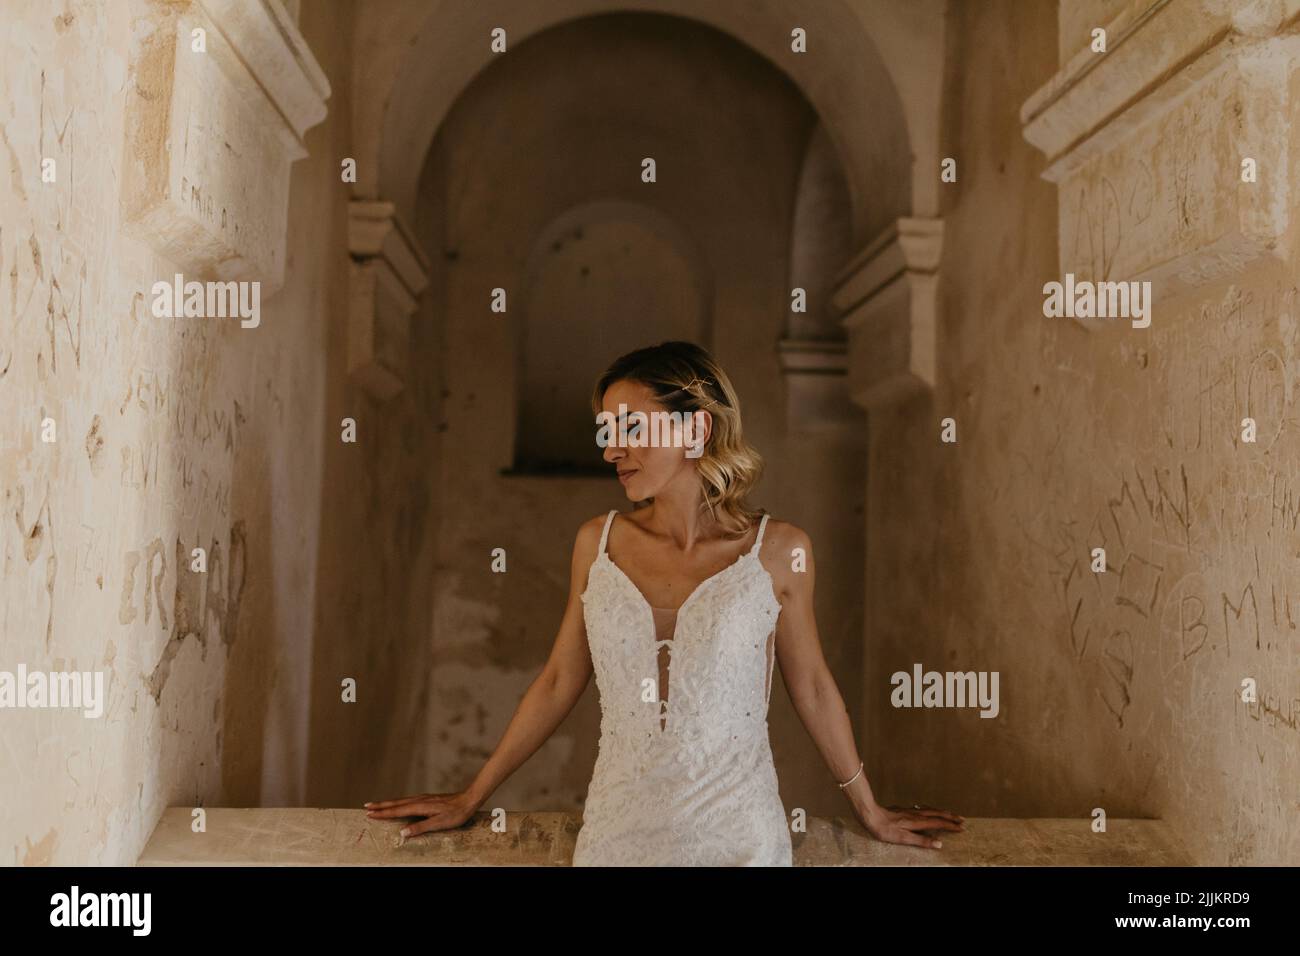 Une mariée du Moyen-Orient posant pour une séance photo dans le fond d'une ancienne arche. Banque D'Images